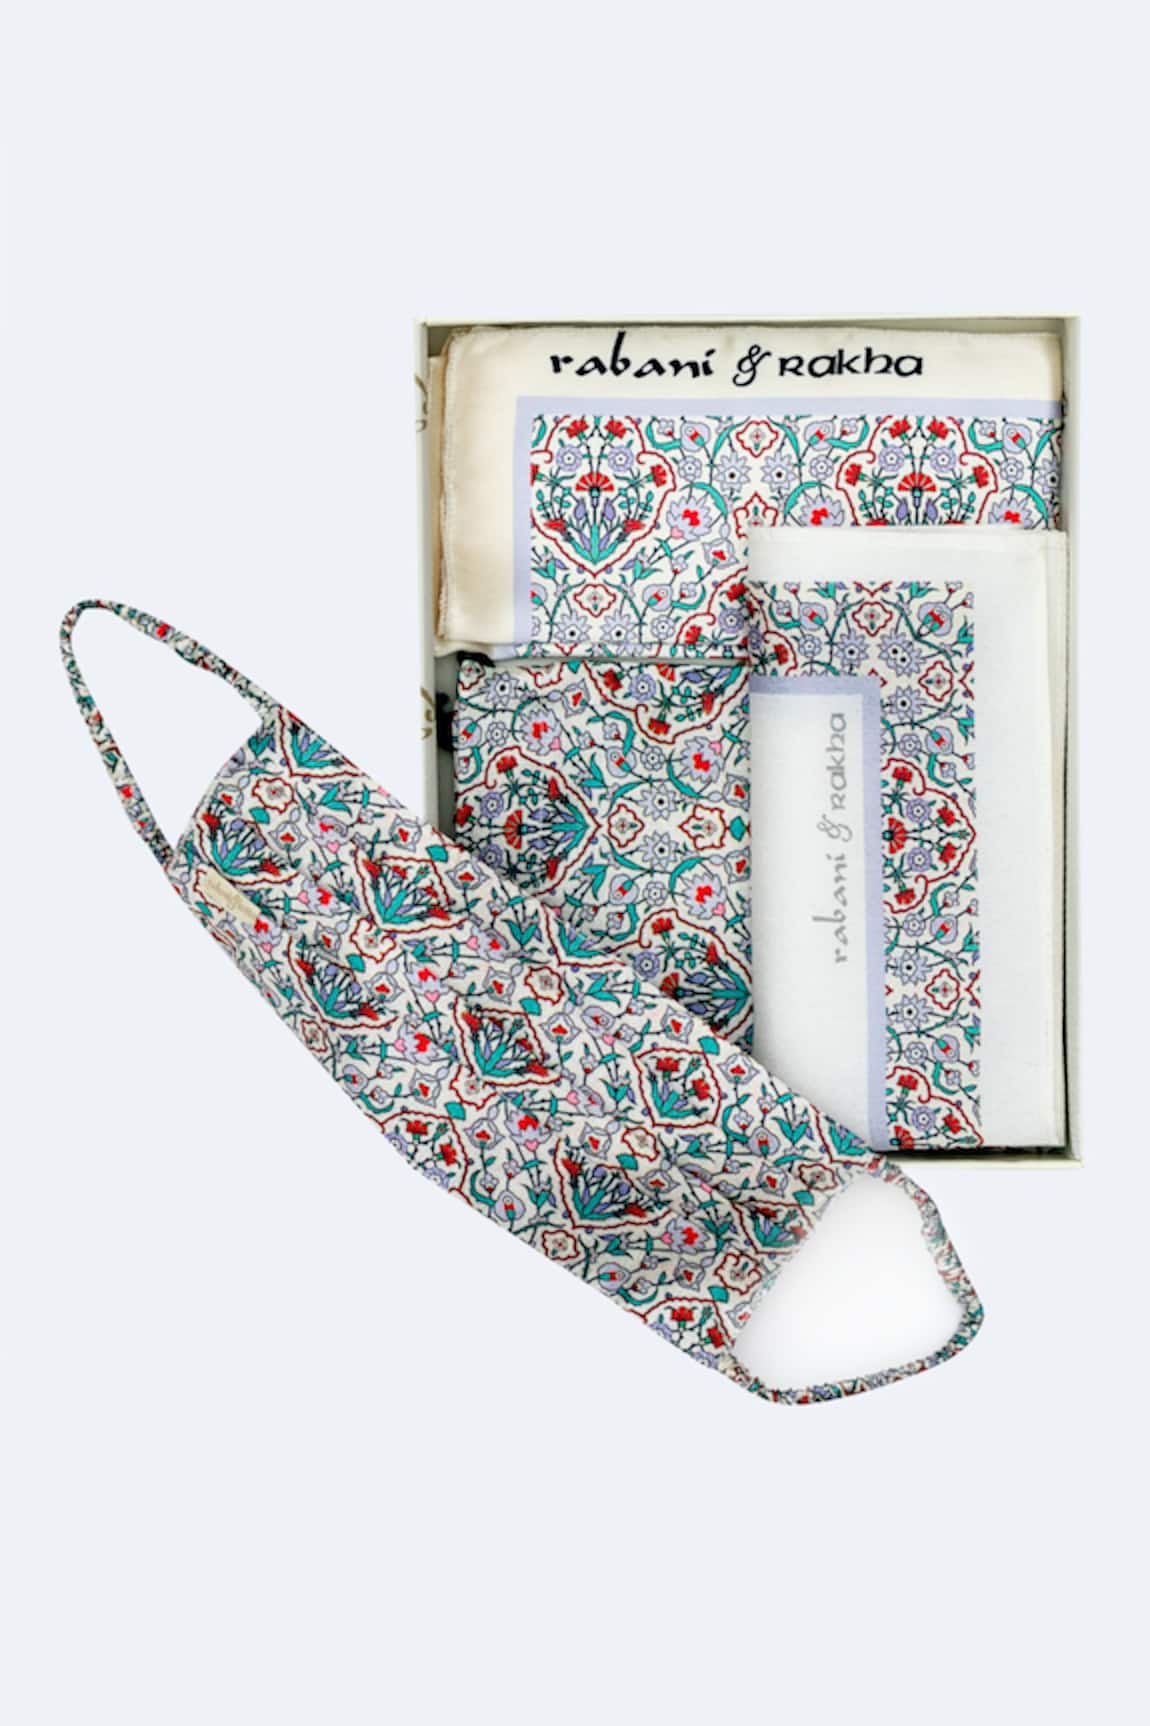 Rabani & Rakha Face Mask & Pocket Square Gift Box 